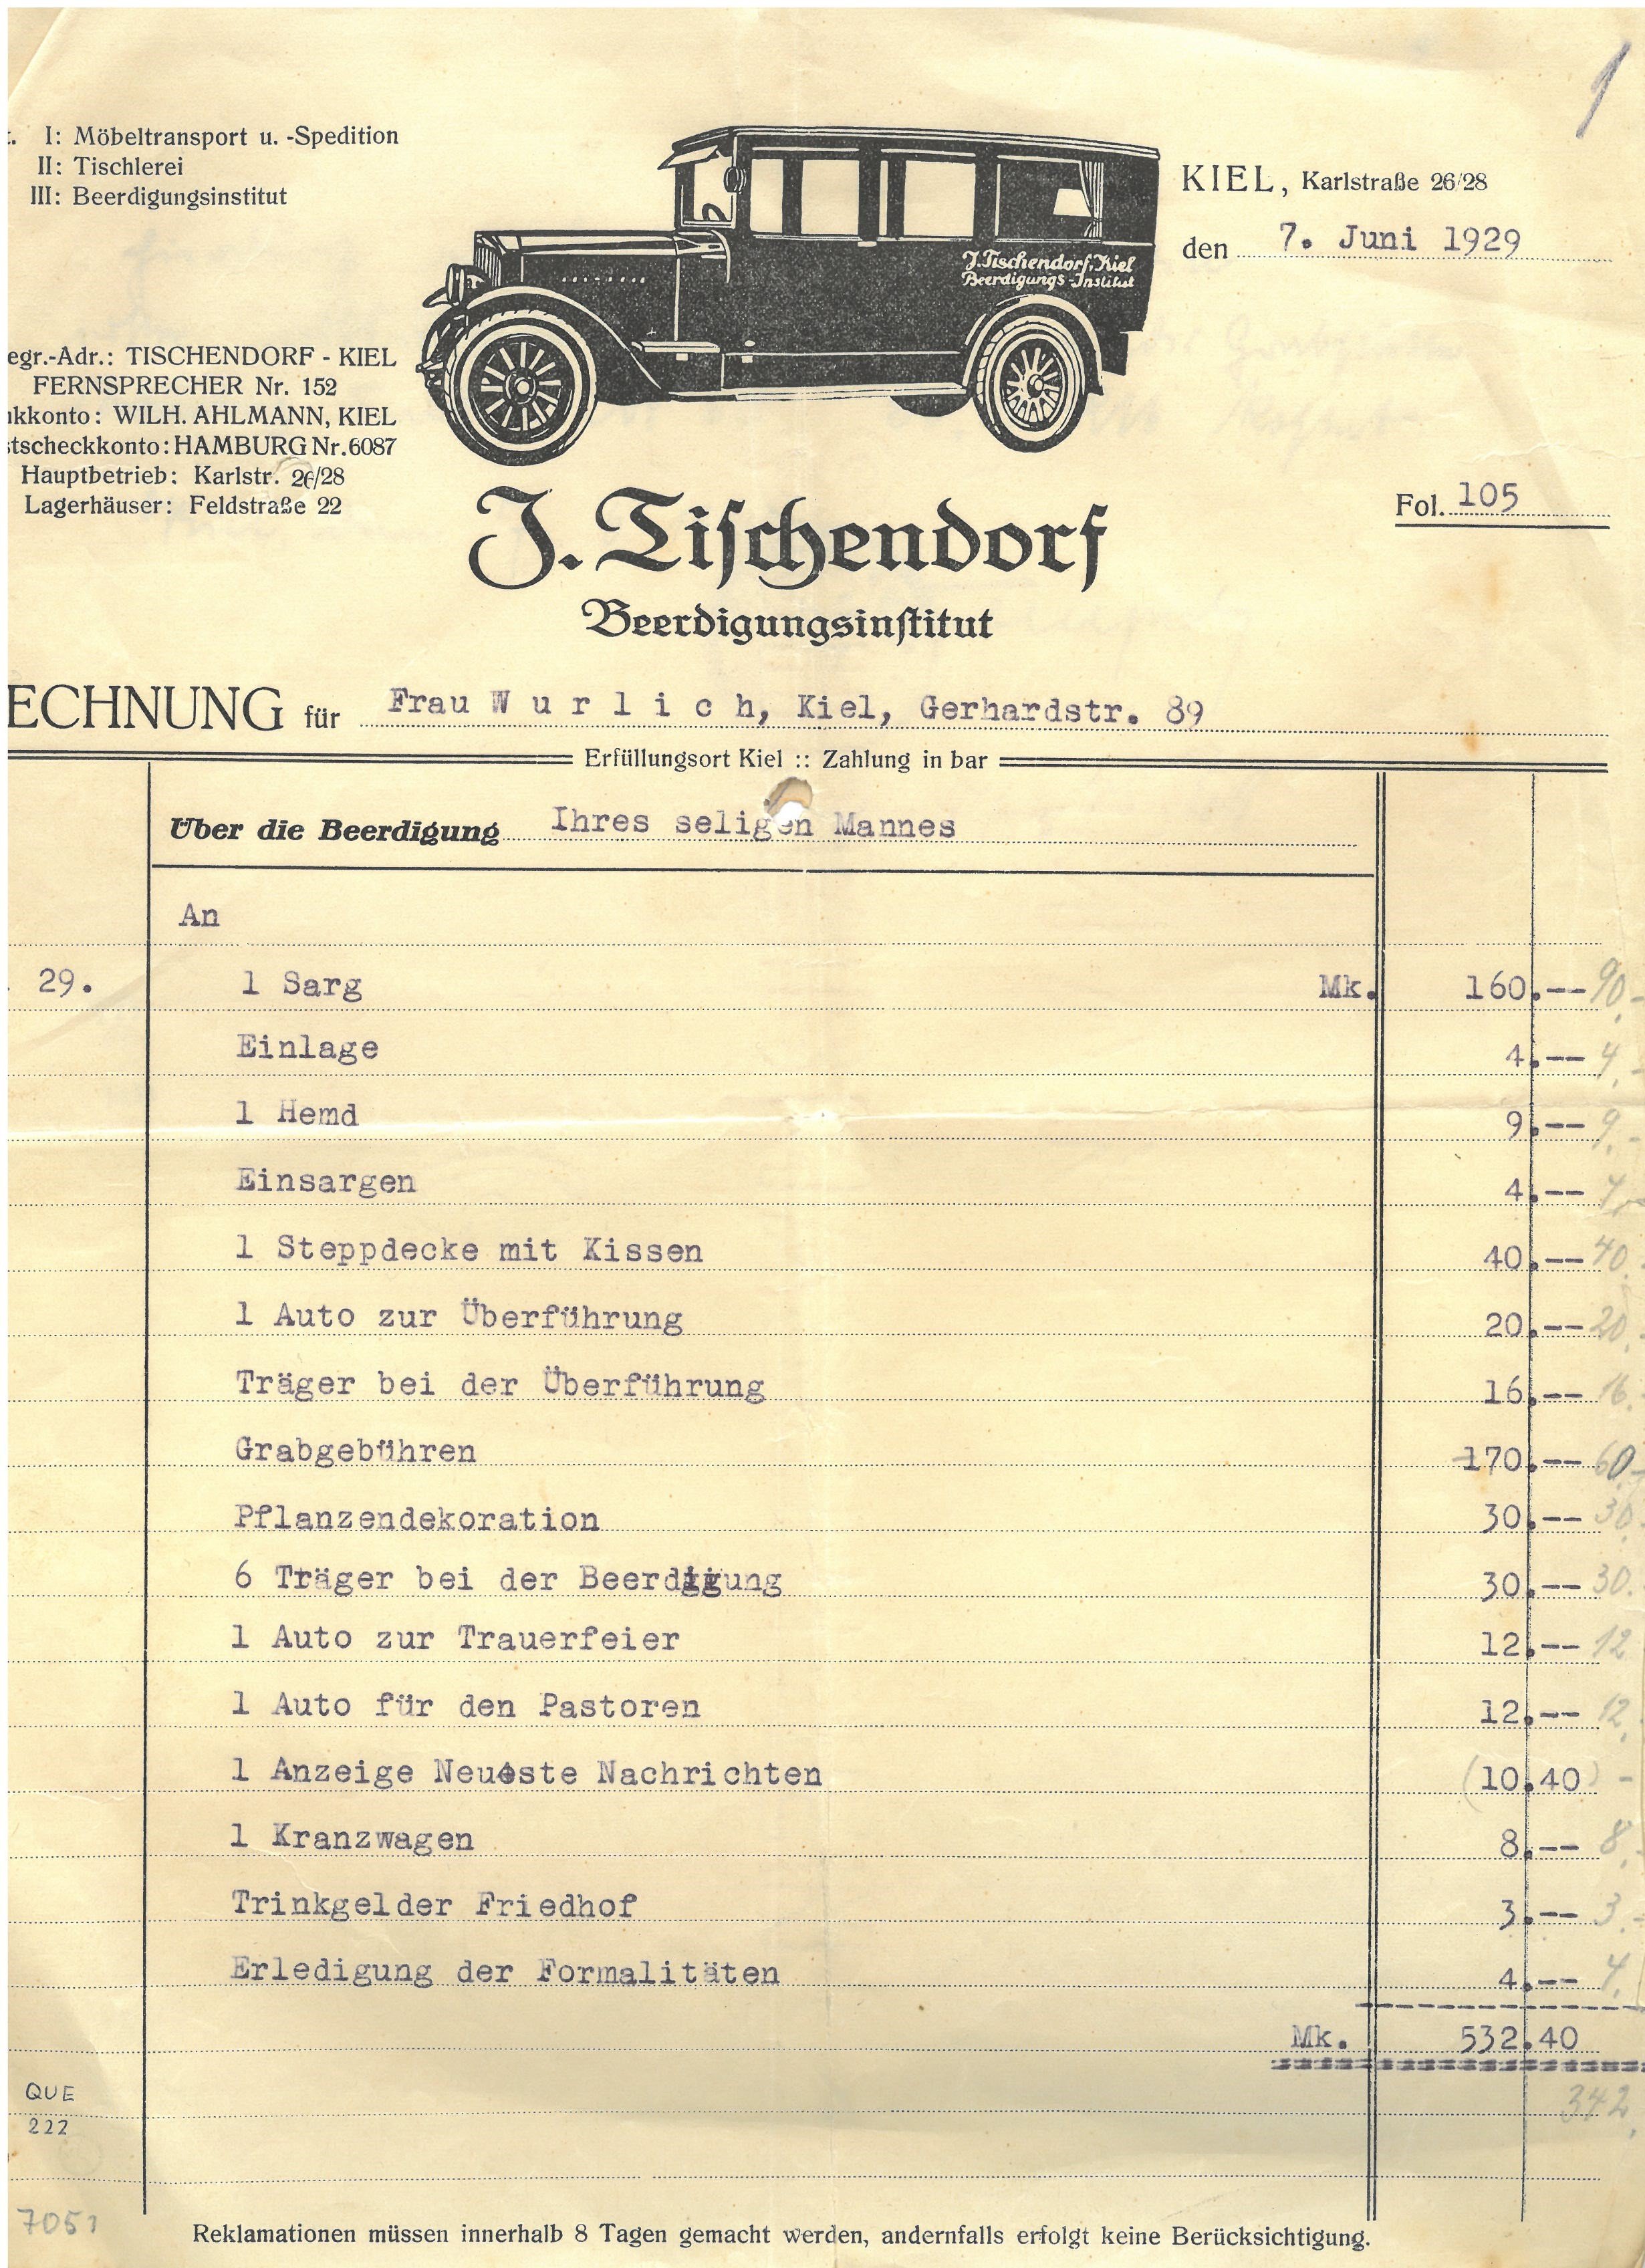 Rechnung für "Frau Wurlich" vom Beerdigungsinstitut J. Tischendorf (Museum für Sepulkralkultur CC0)